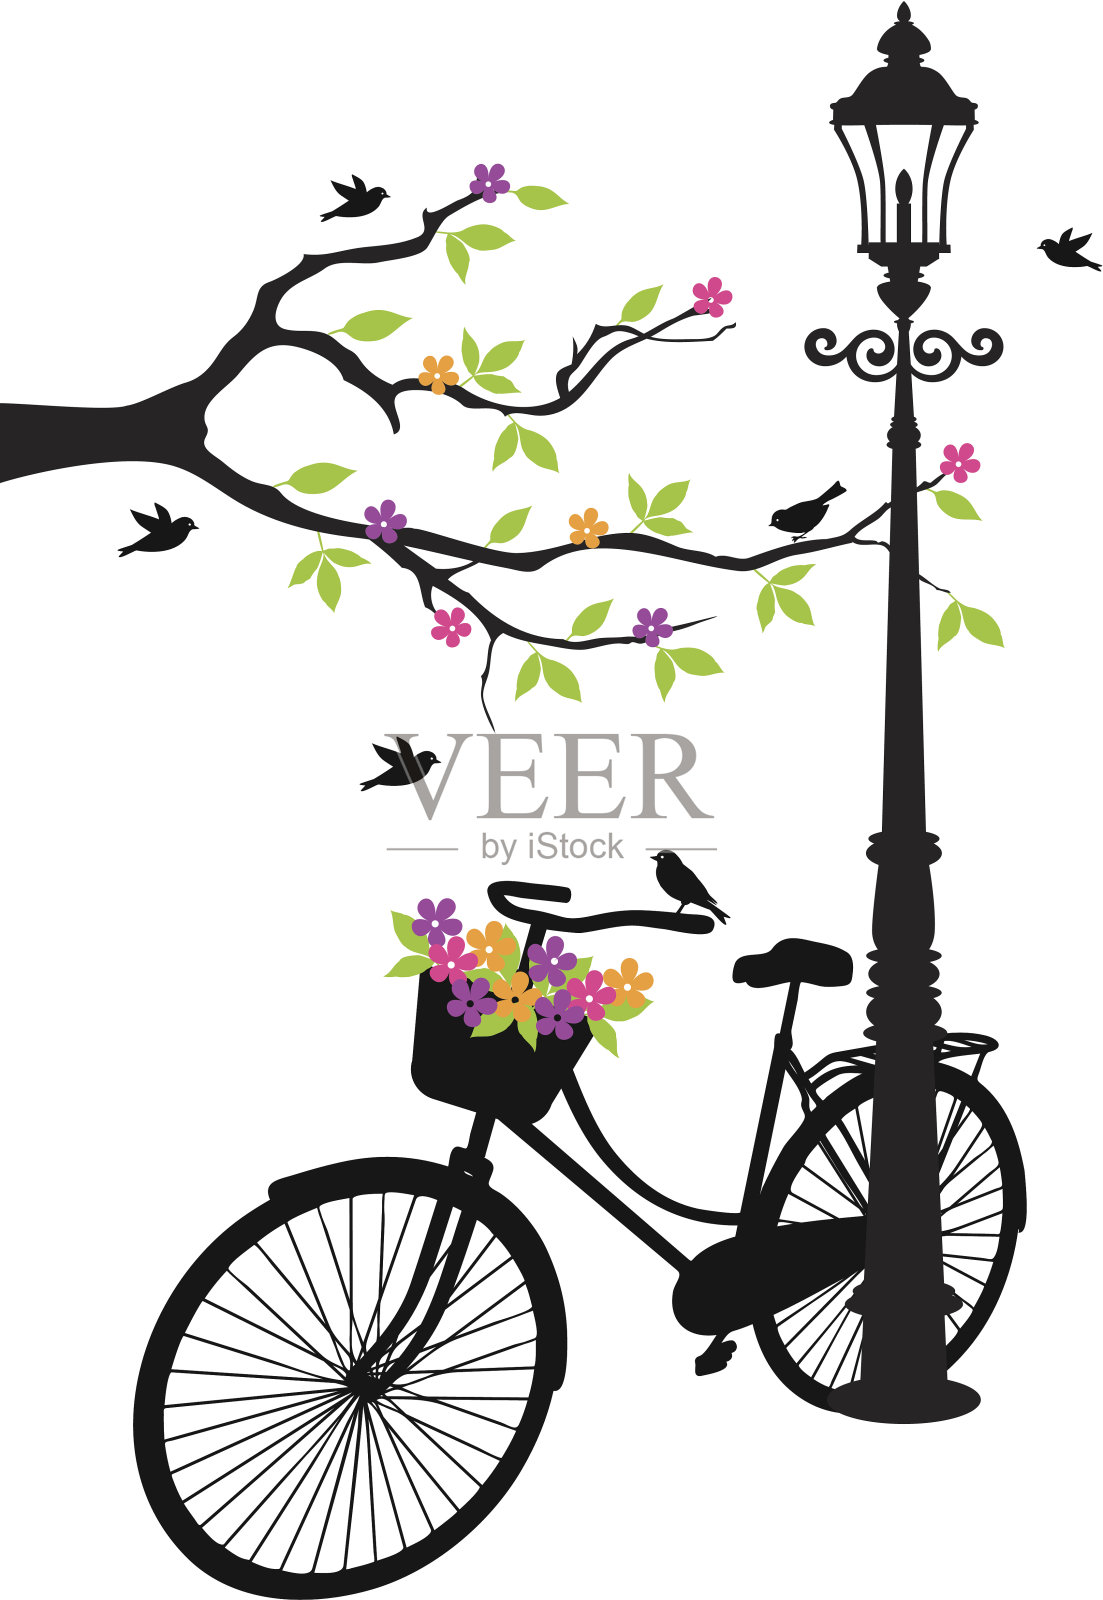 有鸟、灯、花和树的自行车设计元素图片